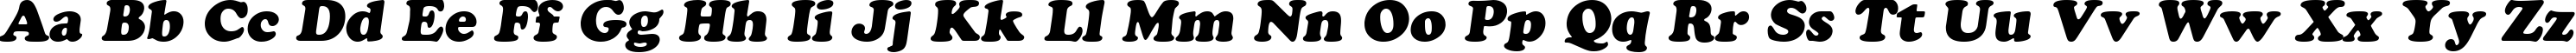 Пример написания английского алфавита шрифтом AGCrownStyle Oblique